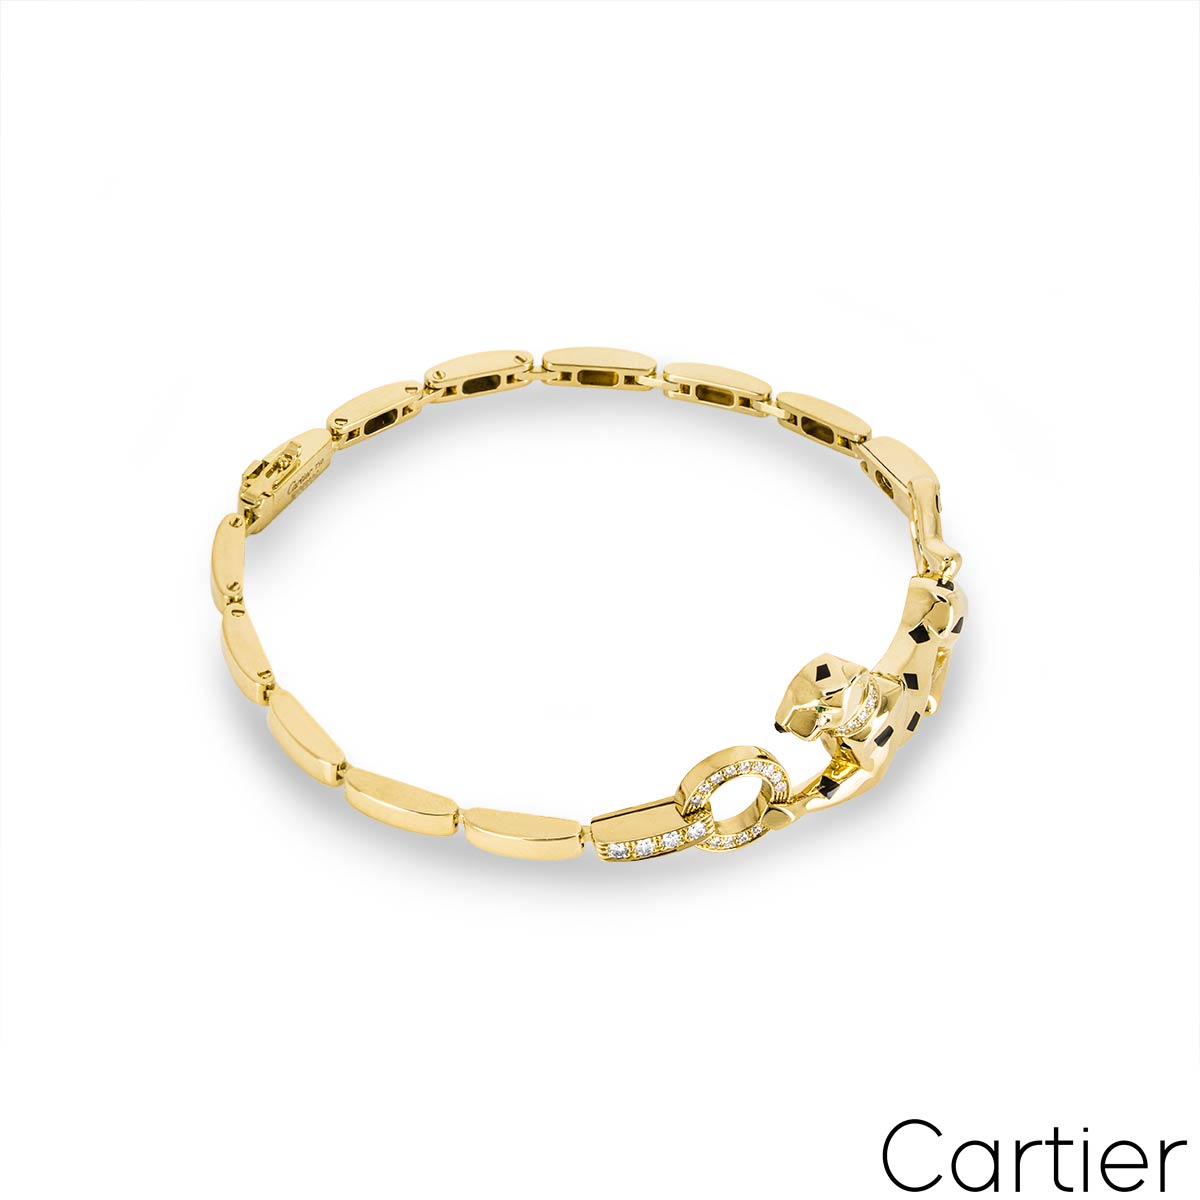 CRN6036700 - Panthère de Cartier bracelet - Yellow gold, lacquer